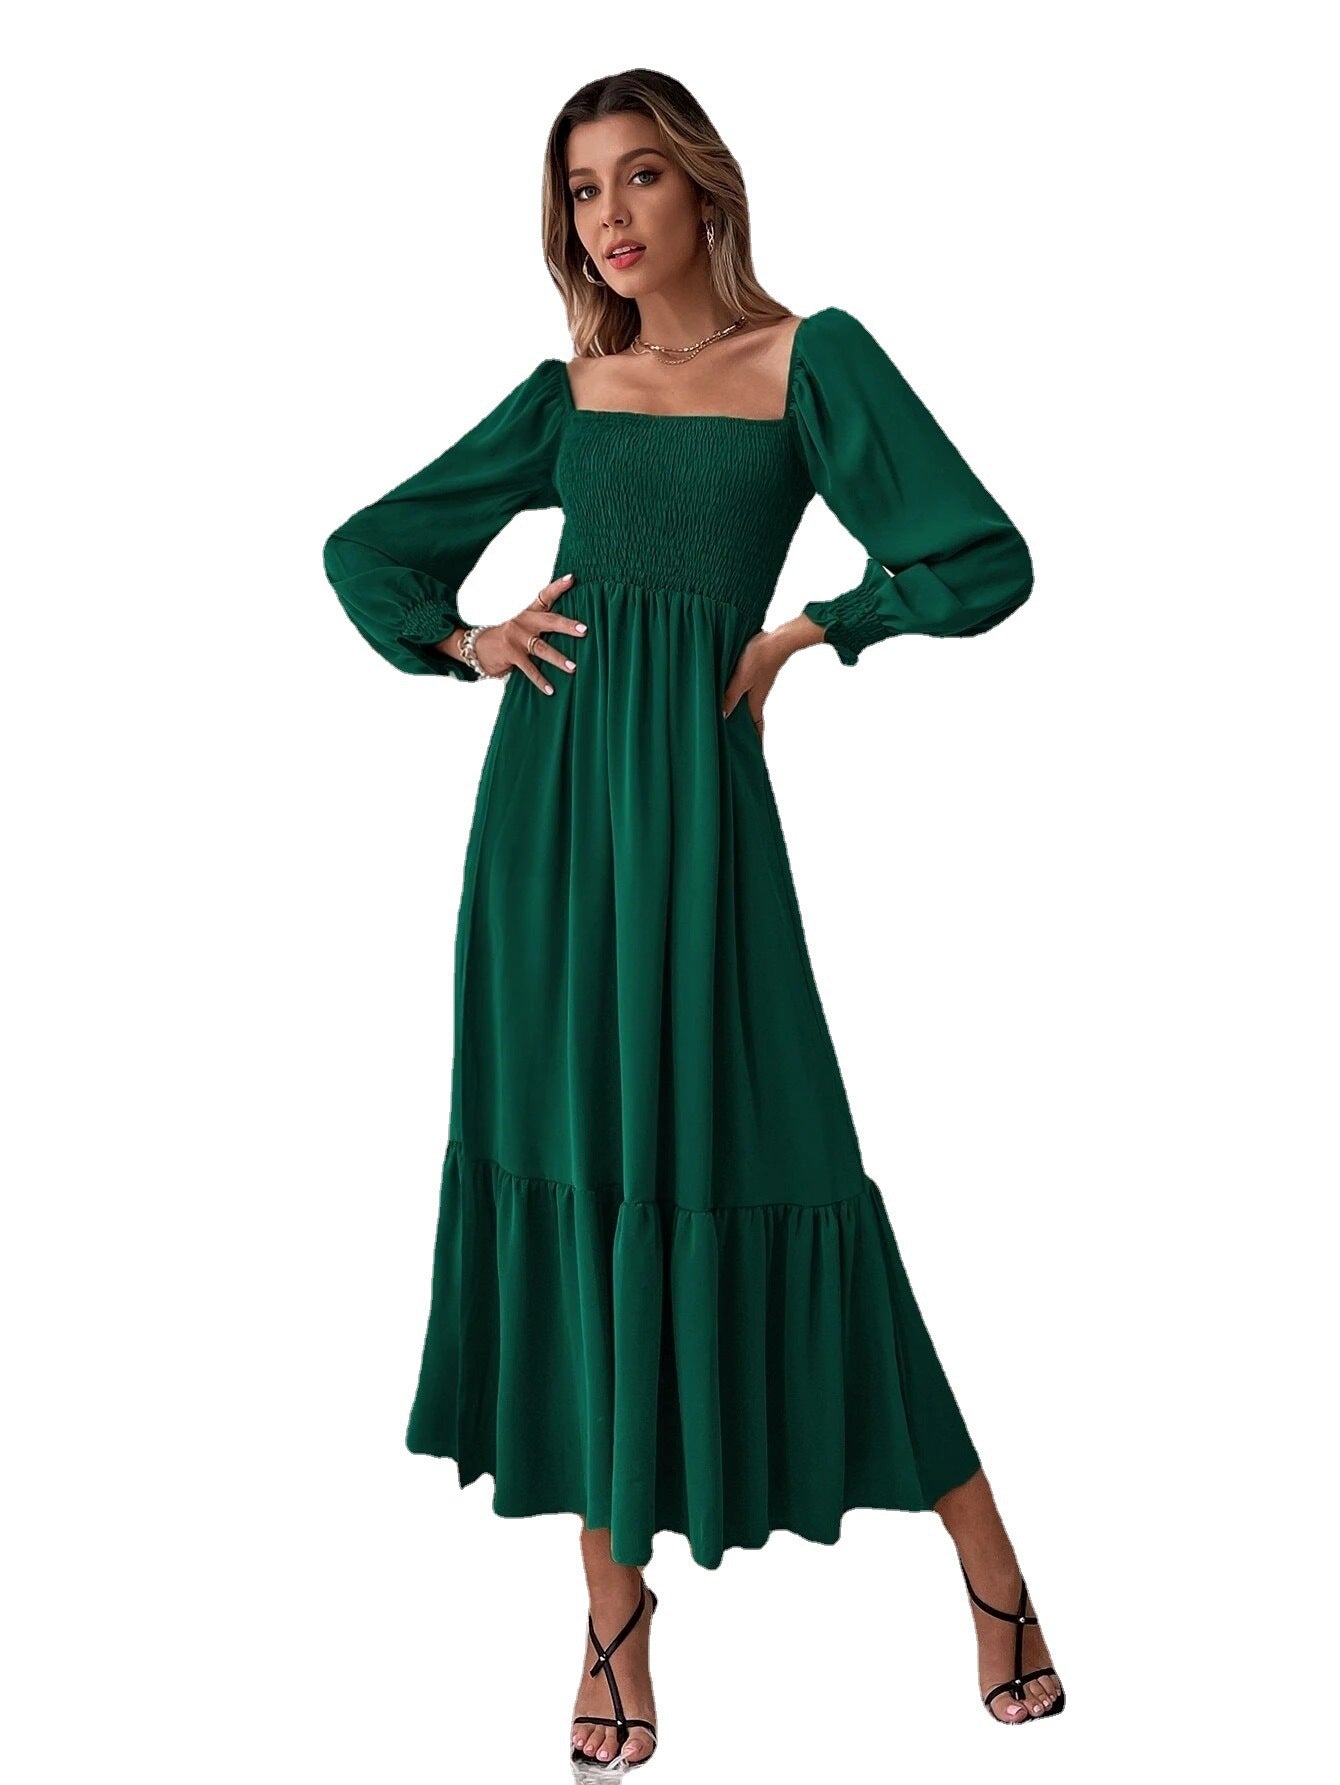 Women's Long Sleeve Ruffled High Waist Tight Temperament Dresses